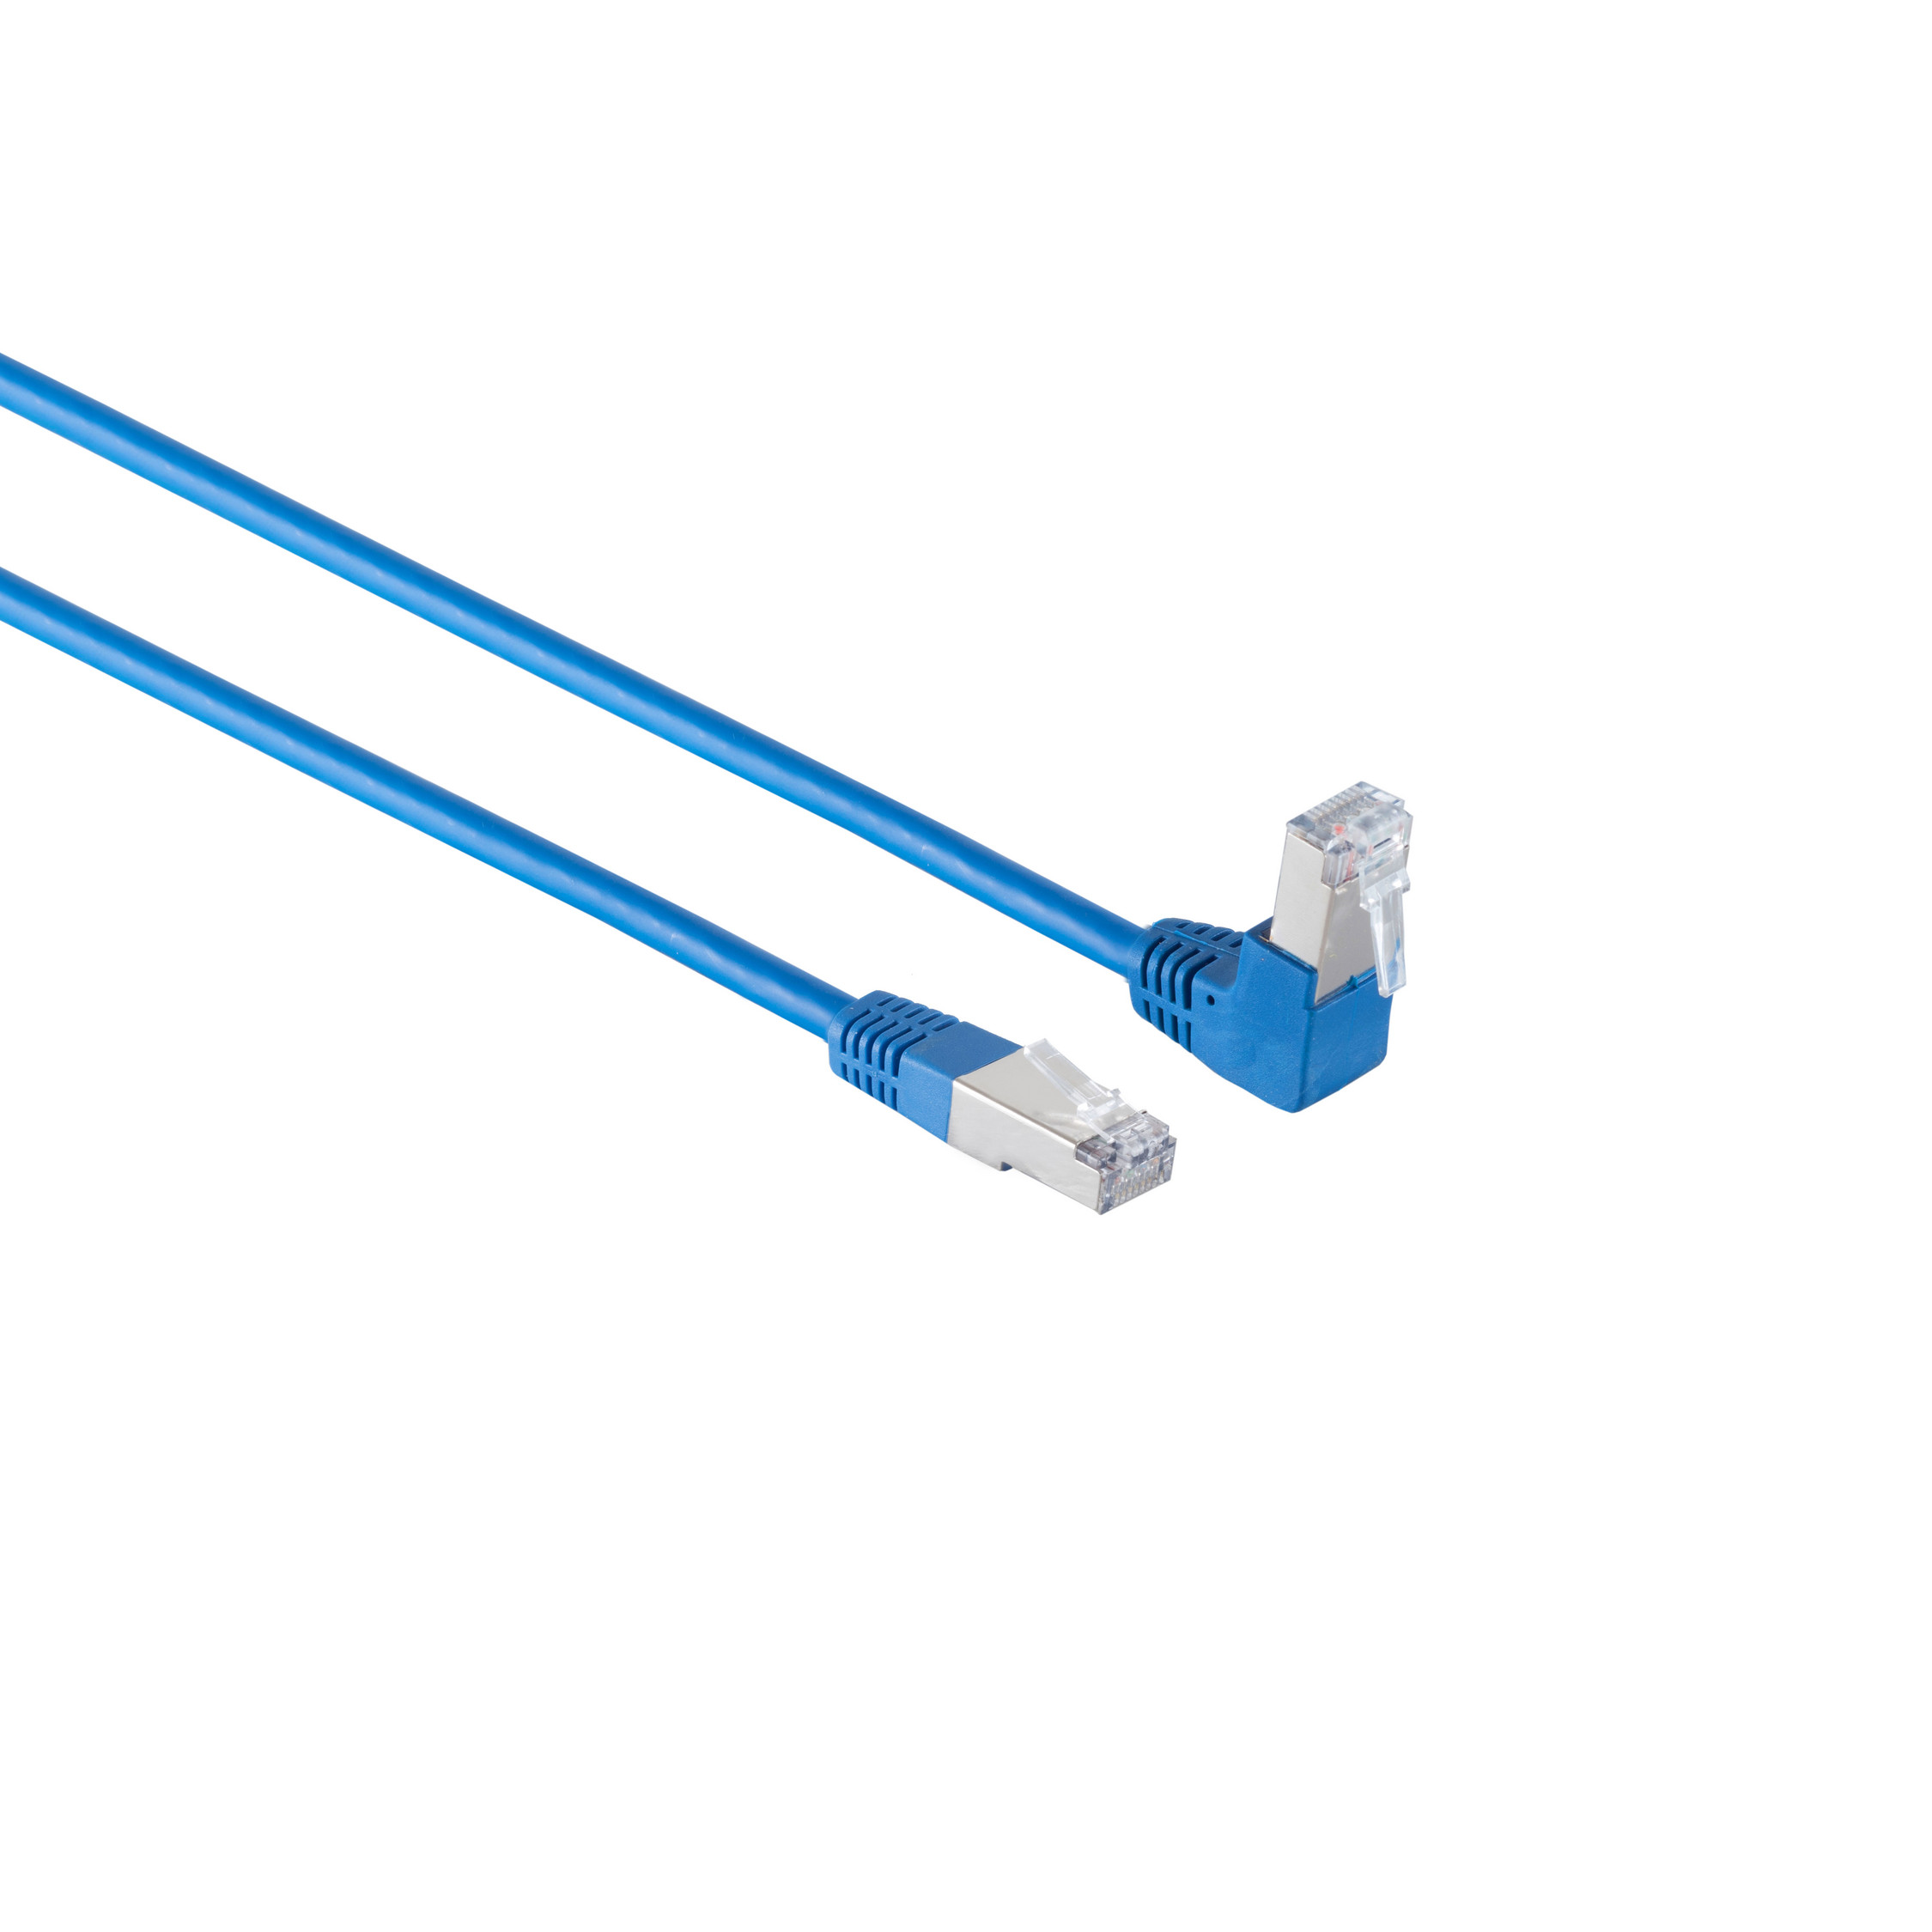 KABELBUDE Kabel 0,25 Patchkabel blau 0,25m, cat Winkel-gerade m S/FTP RJ45, 6 PIMF